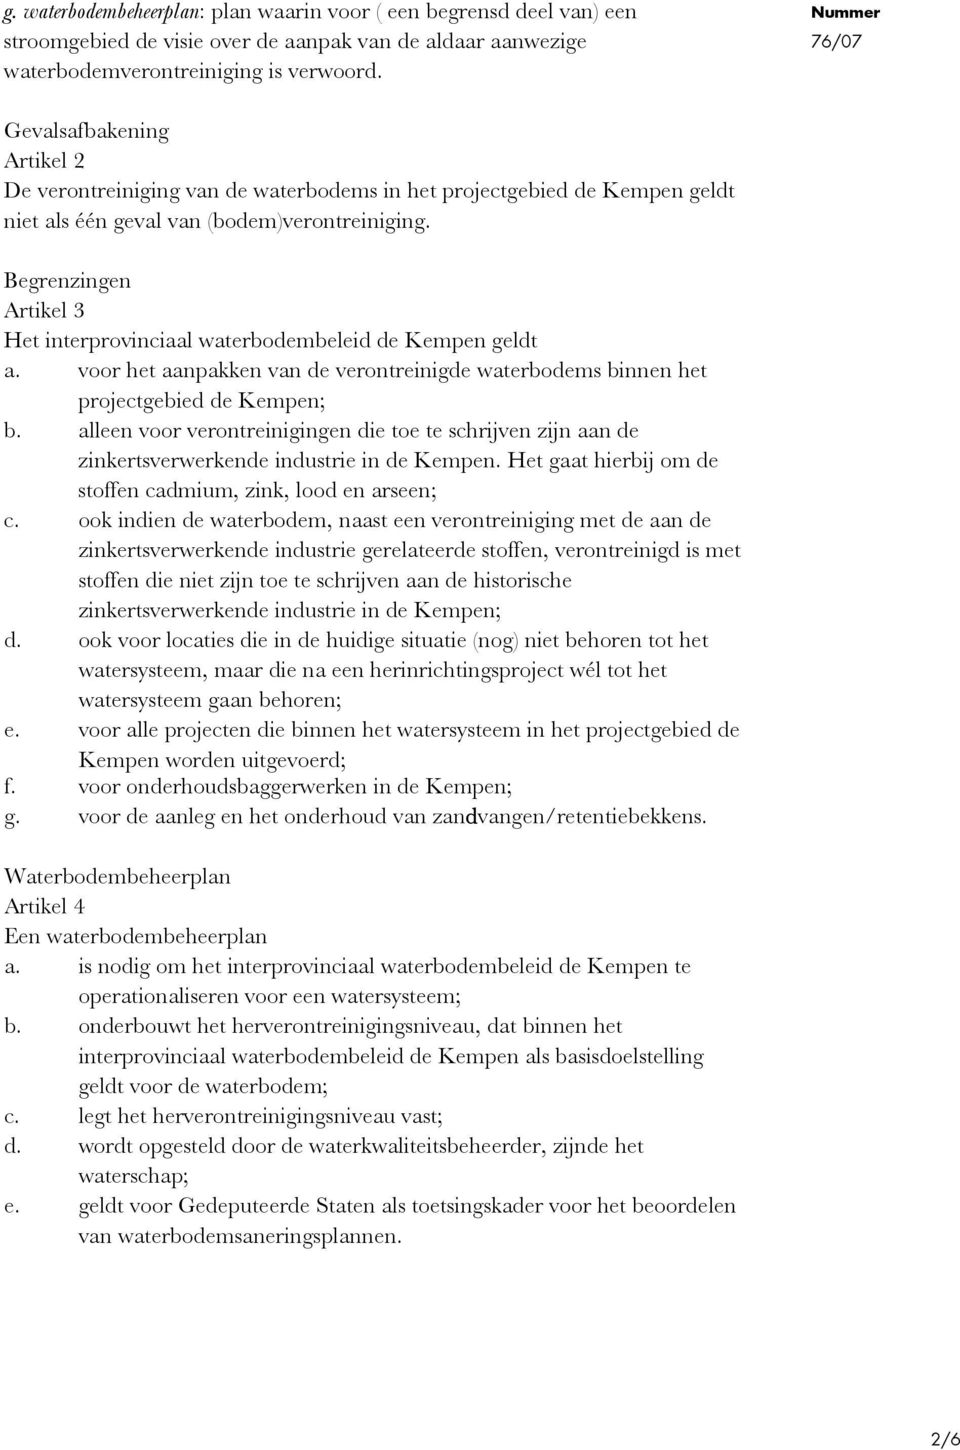 Begrenzingen Artikel 3 Het interprovinciaal waterbodembeleid de Kempen geldt a. voor het aanpakken van de verontreinigde waterbodems binnen het projectgebied de Kempen; b.